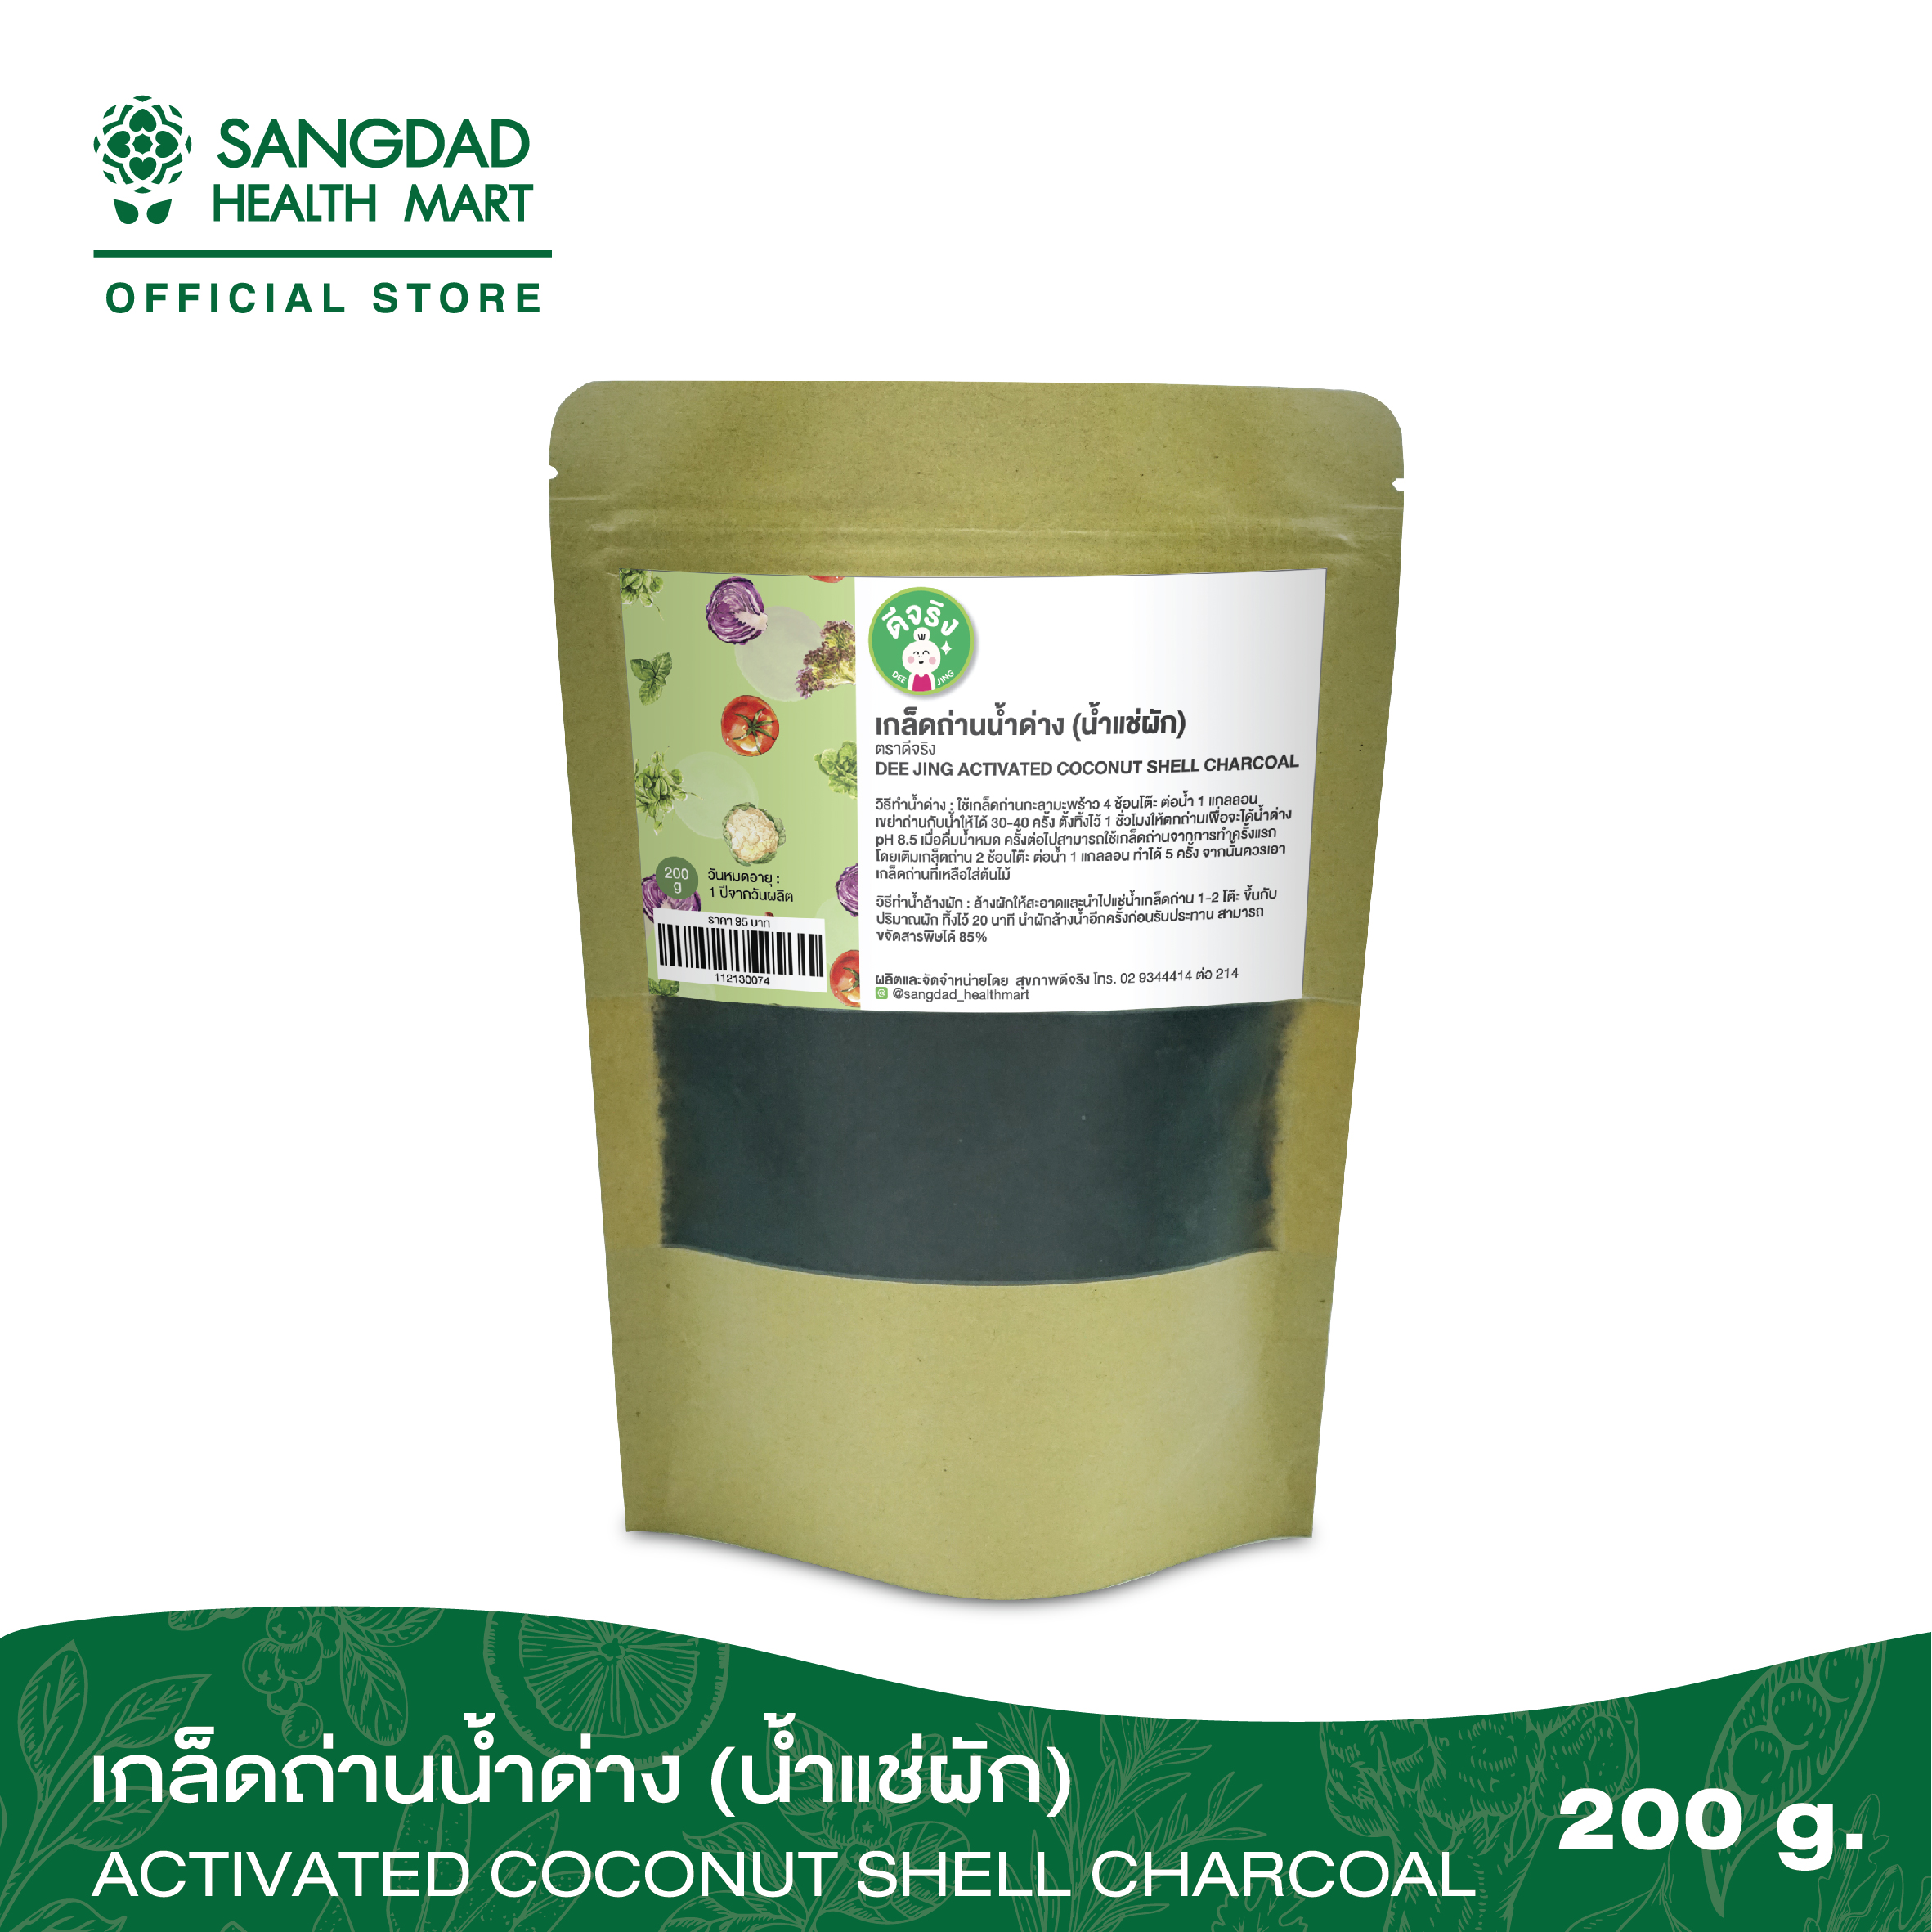 Sangdad Health Mart : เกล็ดผงถ่านทำน้ำด่างและน้ำแช่ผัก ปริมาณ 200 กรัม By:ป้านิด|สินค้าดีจริง  #สุขภาพดีมีไว้แบ่งปัน